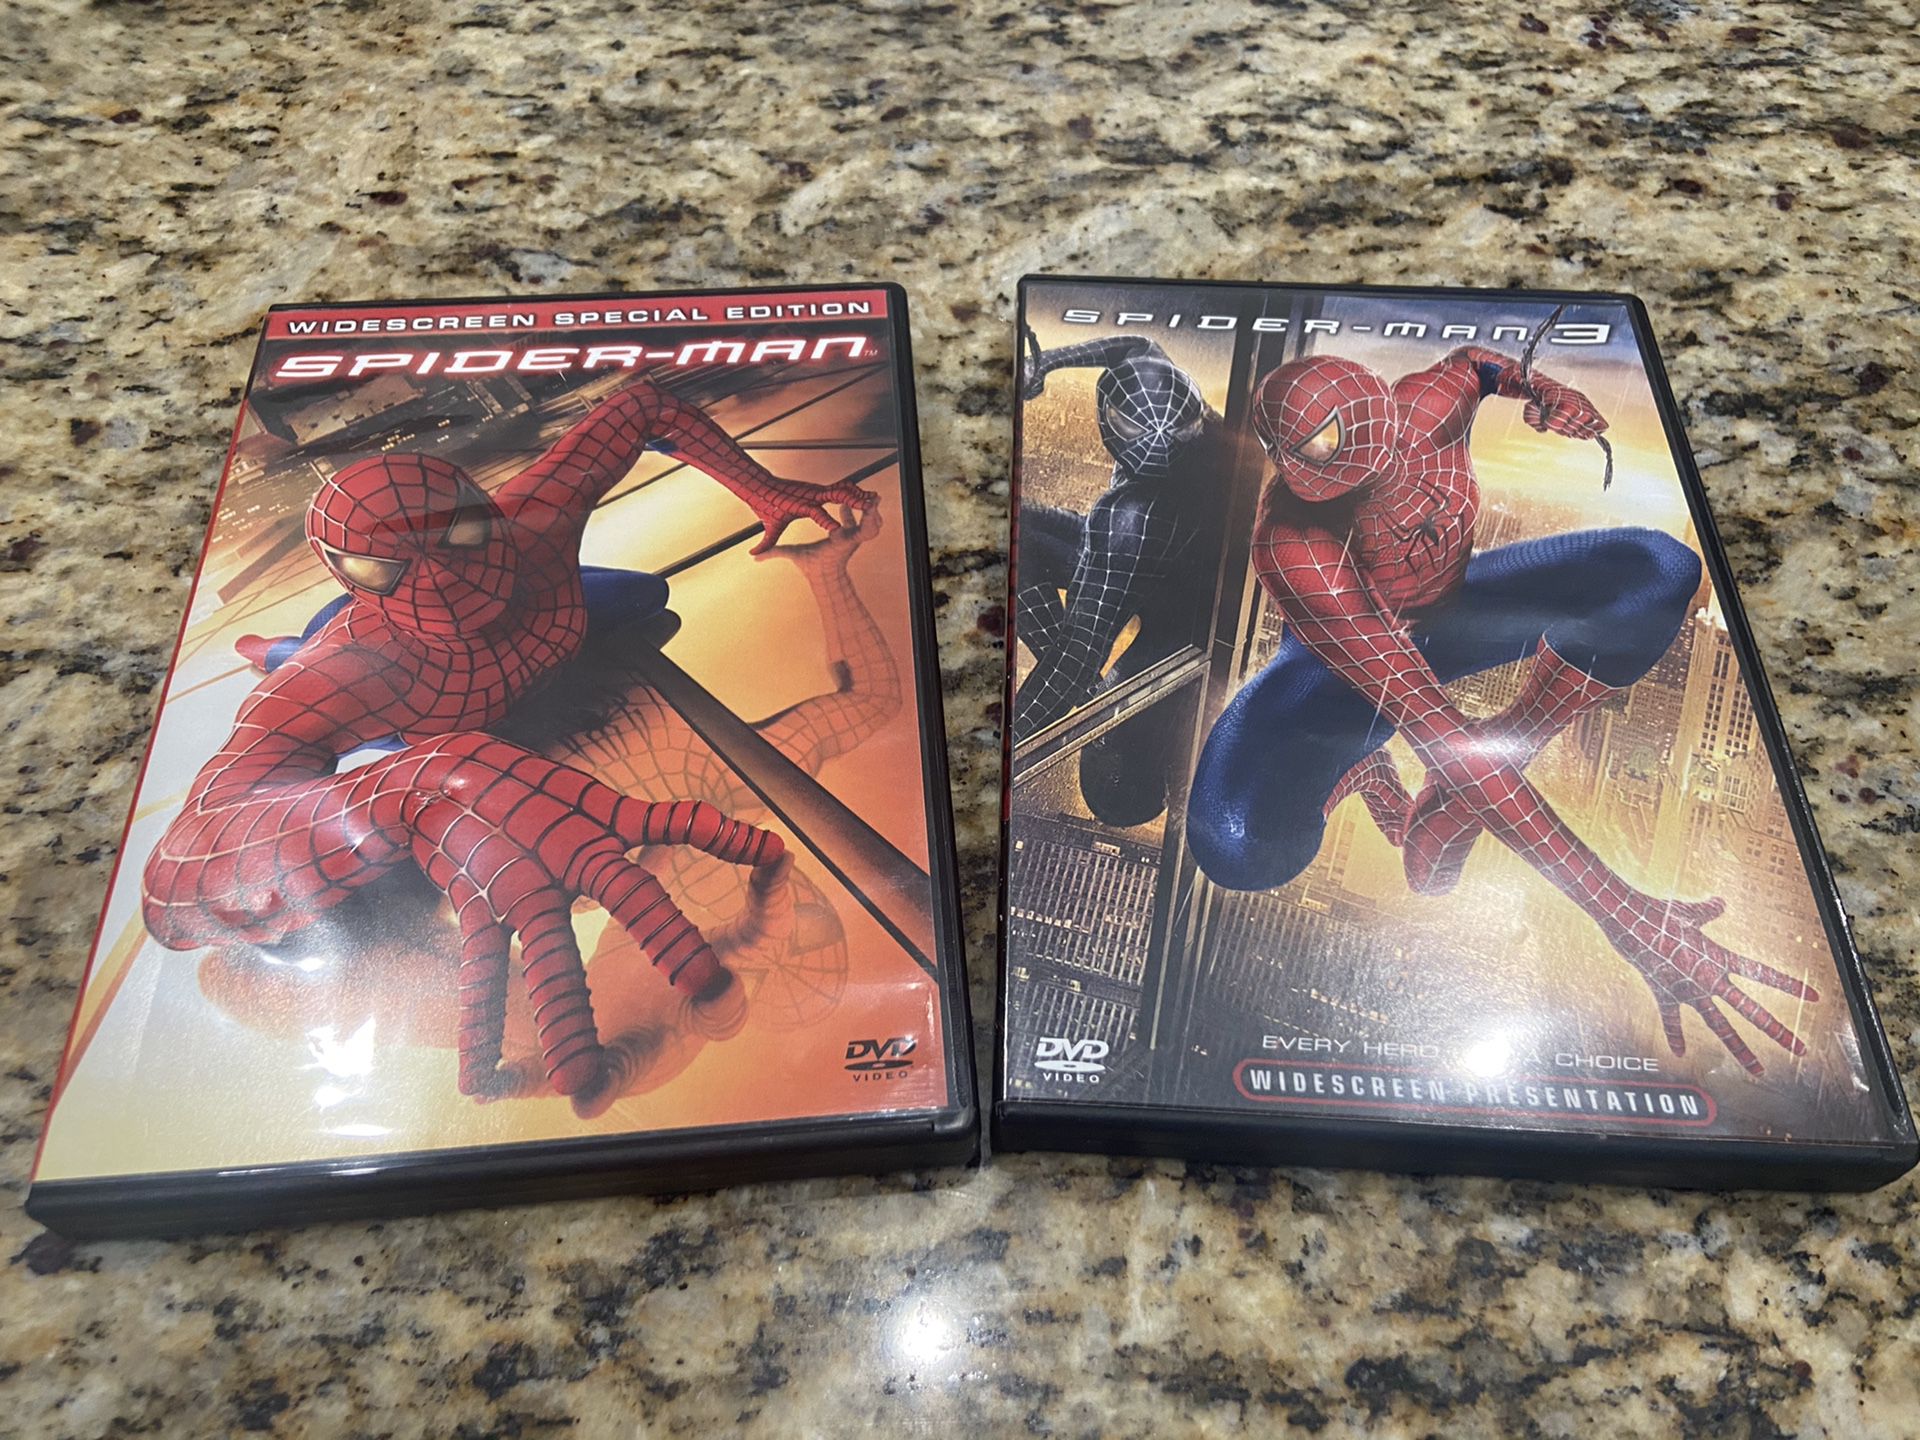 Spider-Man and Spider-Man 3 DVDs